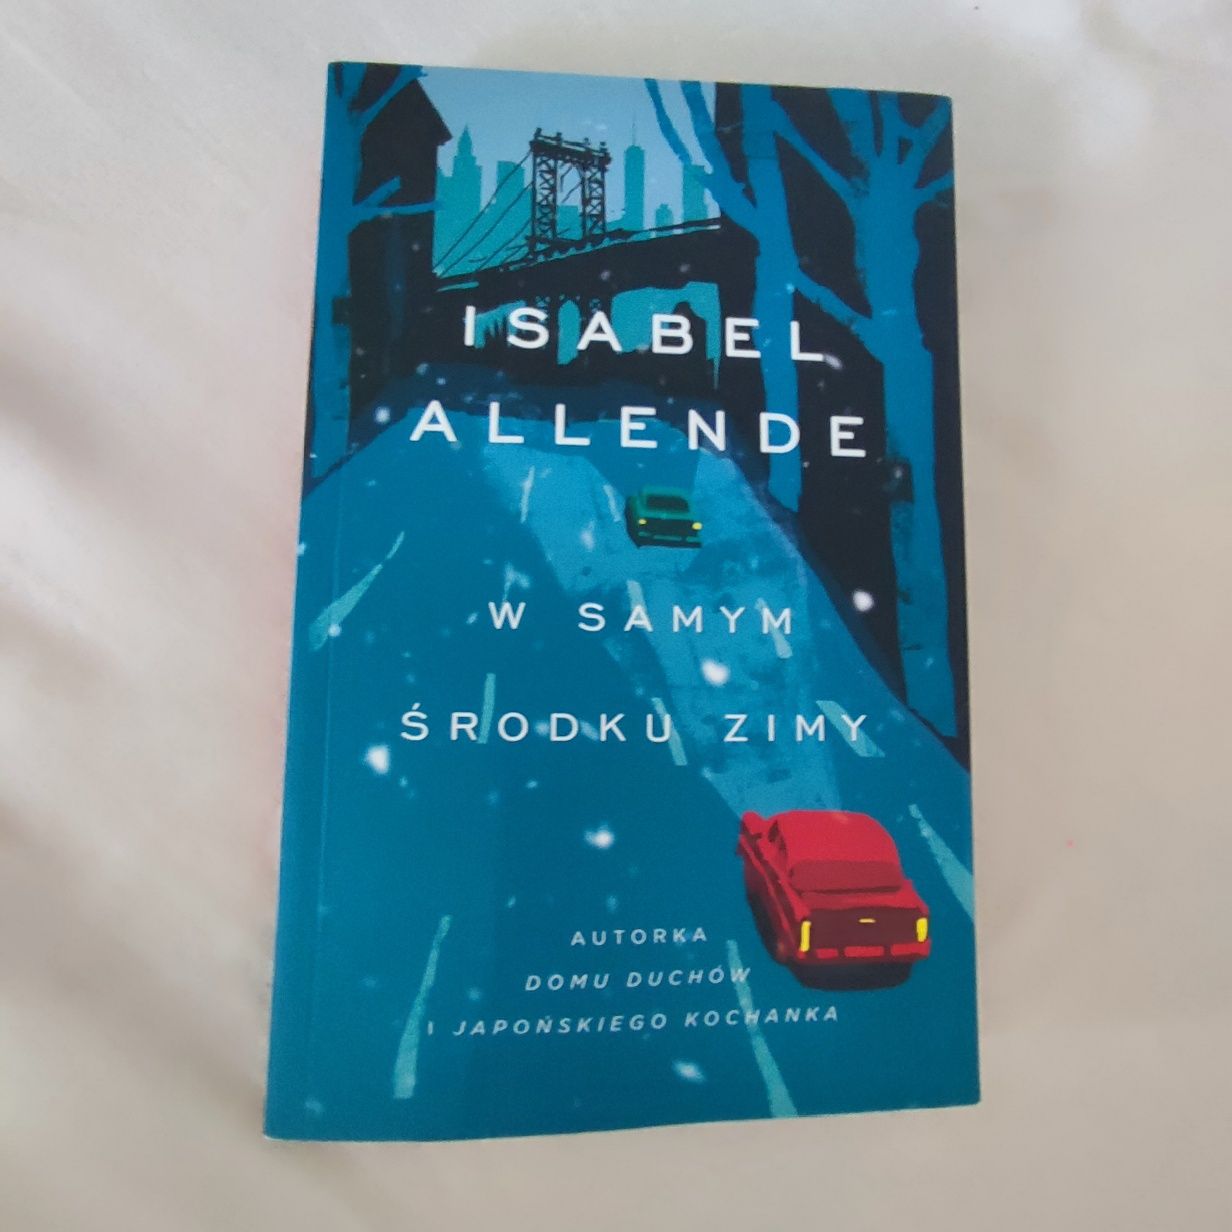 W samym środku zimy, Isabel Allende